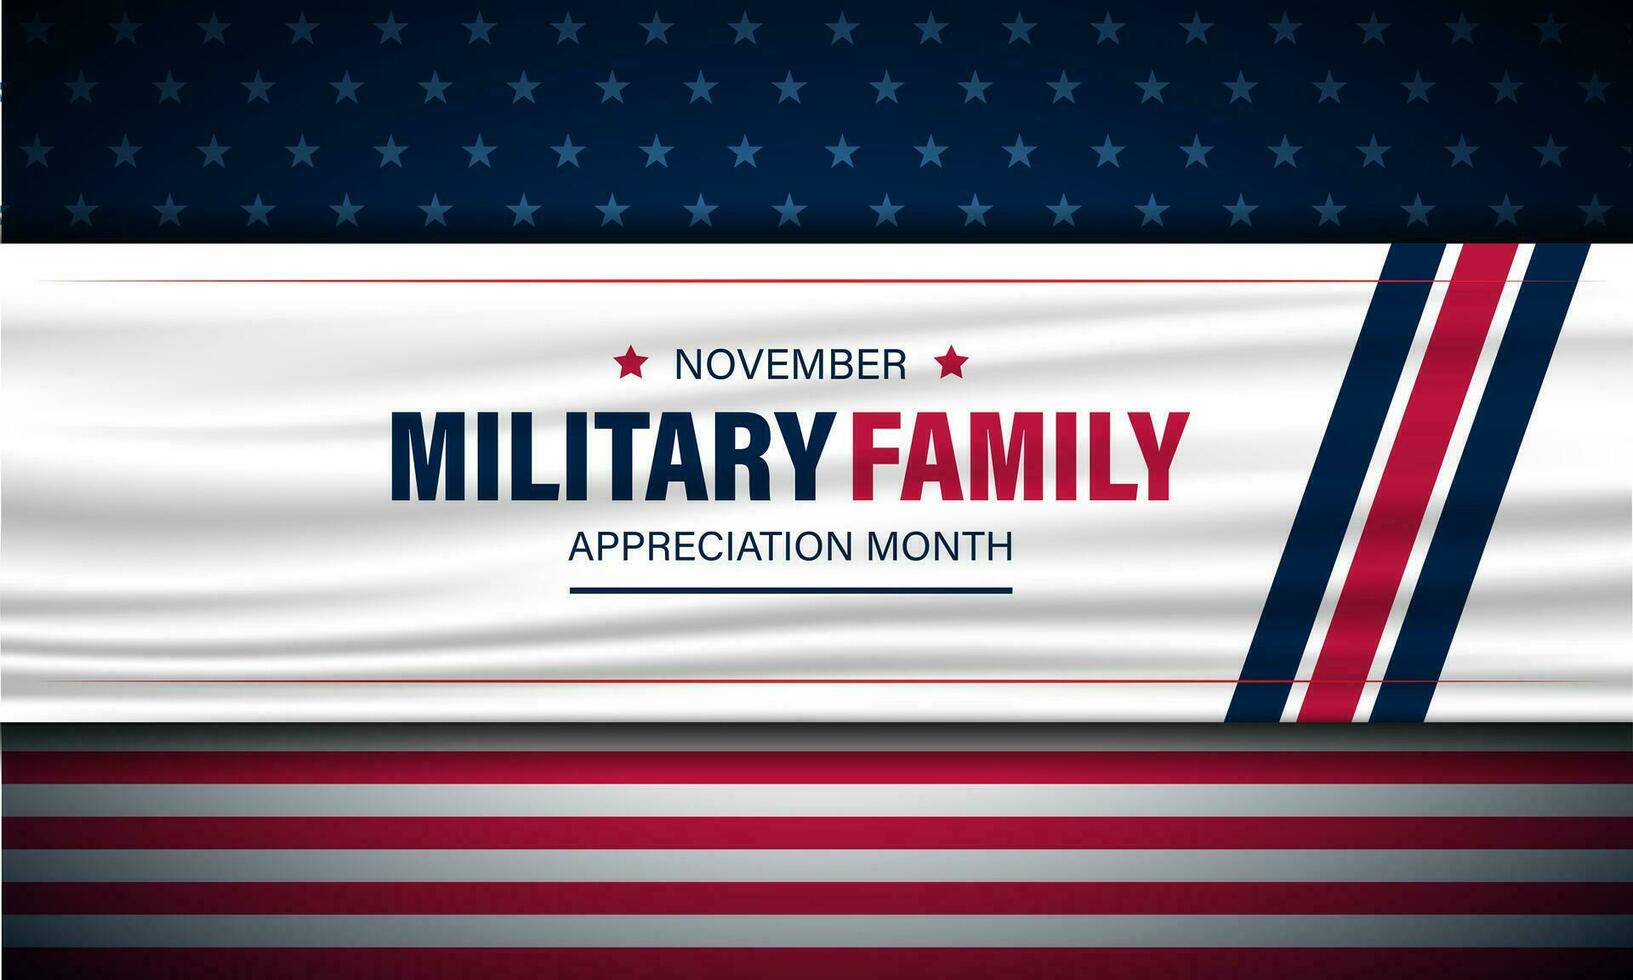 nationale militaire famille appréciation mois est novembre. Contexte vecteur illustration